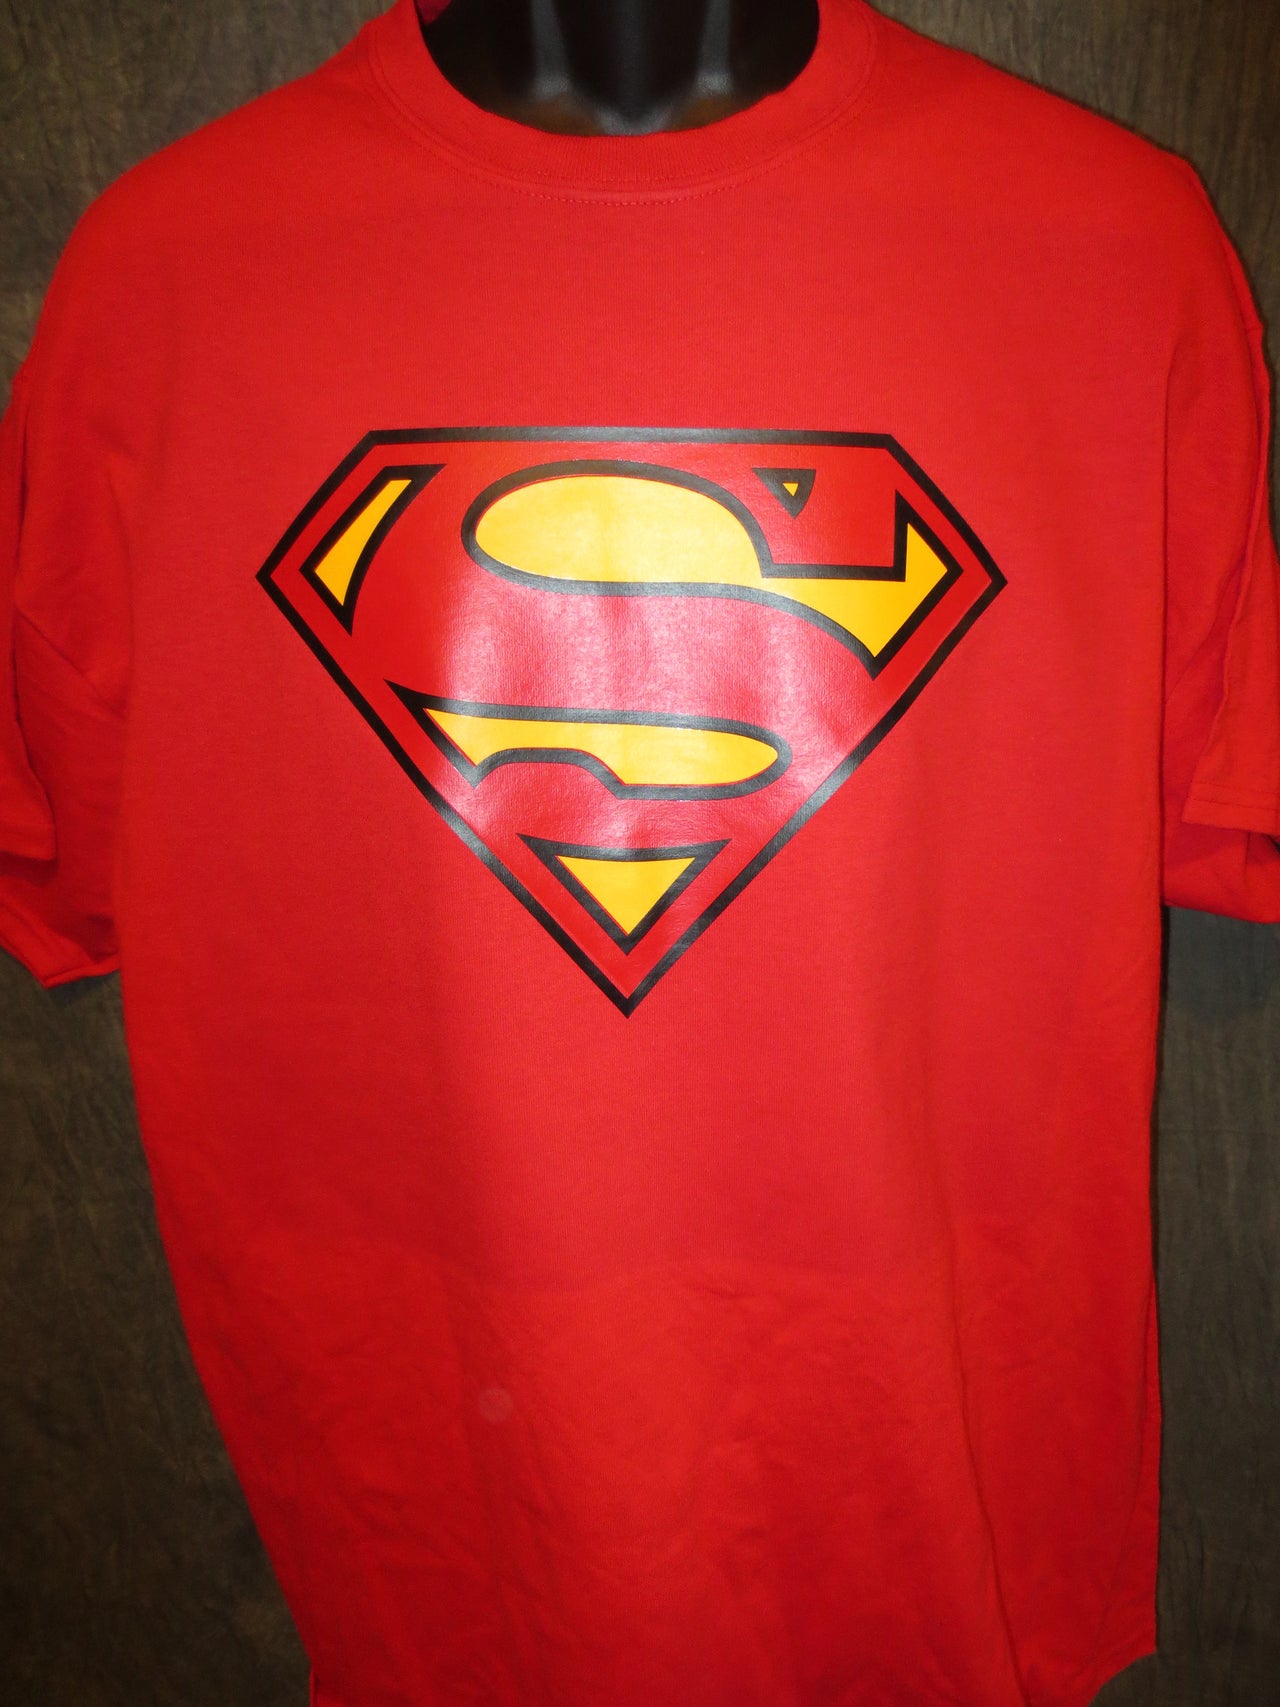 Superman Classic Logo Red Tshirt - TshirtNow.net - 7